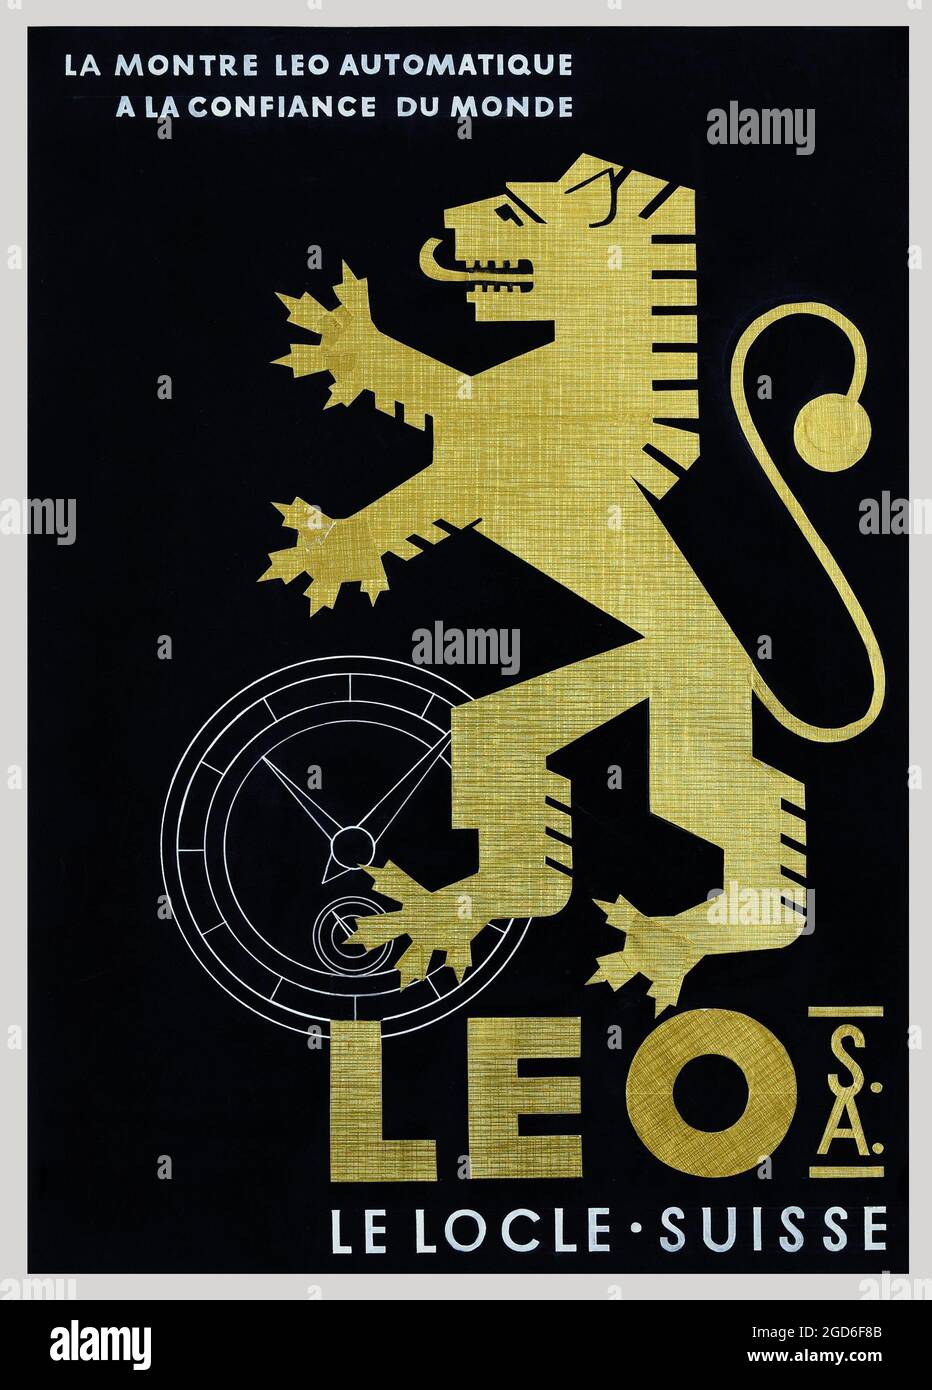 Anuncio/cartel antiguo y vintage de A. Rentschler - Leo S.A. Le Locle Suisse – 1950 Foto de stock